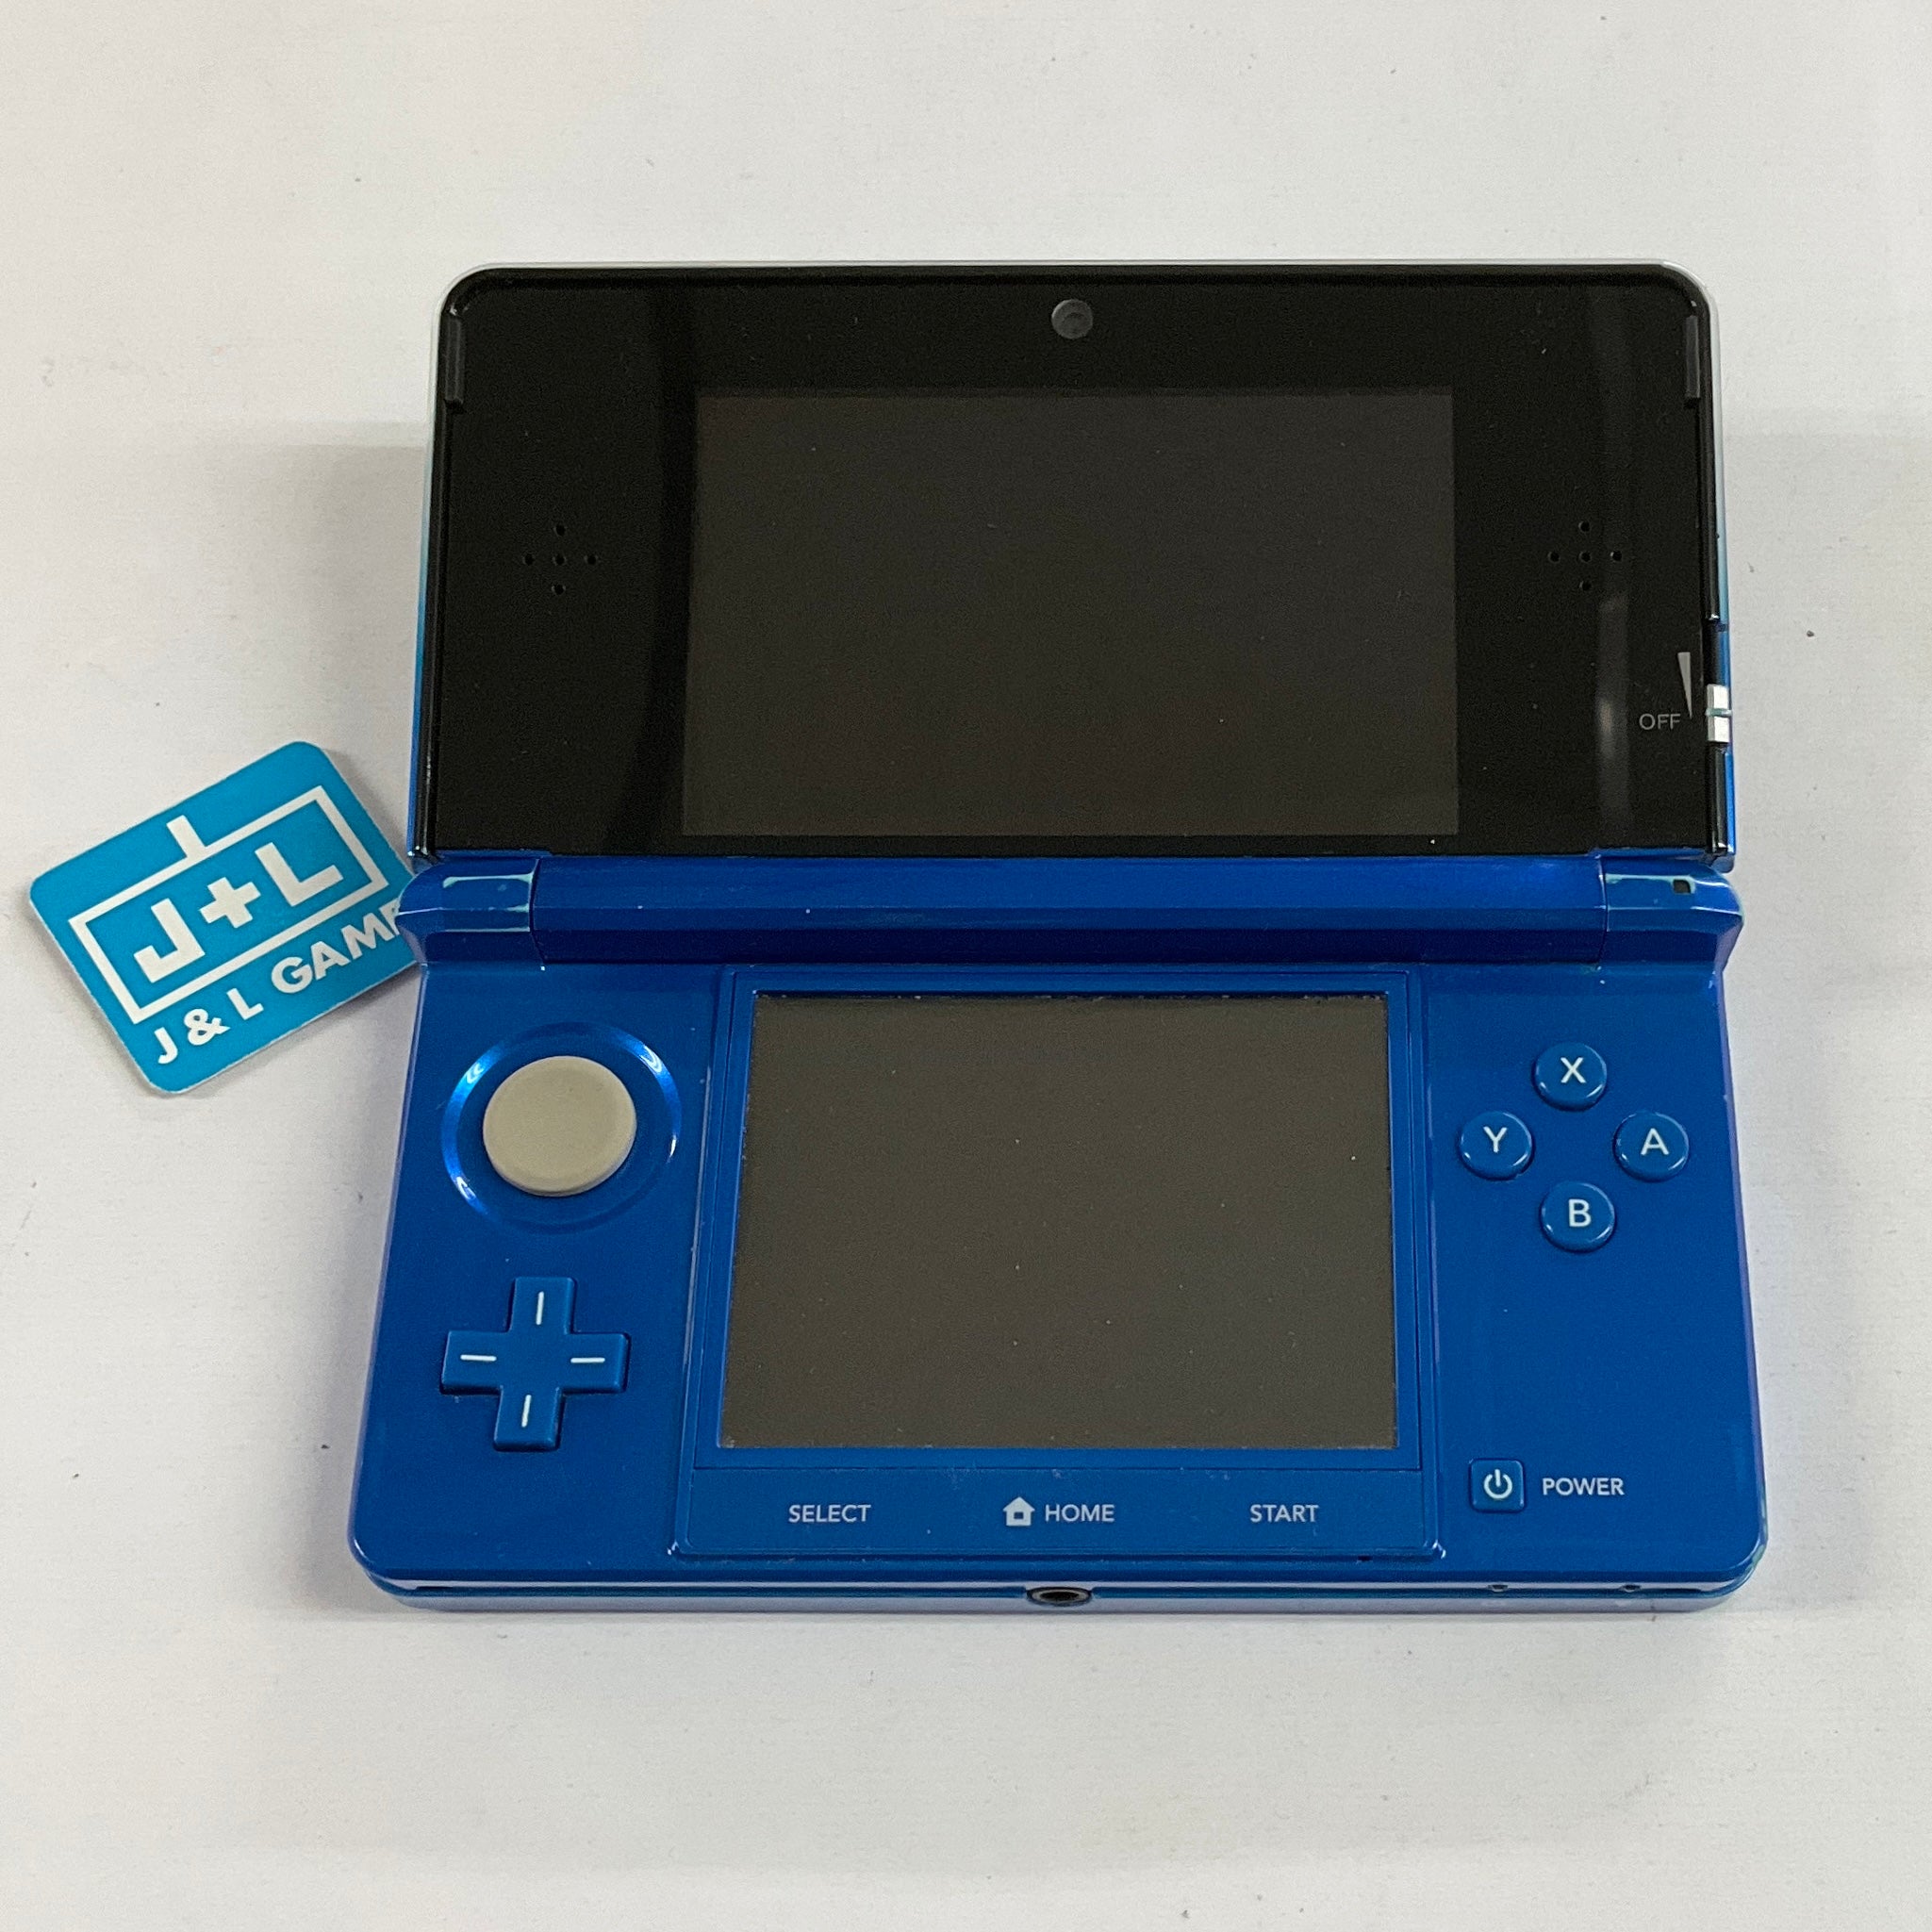 Nintendo 3DS Console (Fire Emblem Awakening) - Nintendo 3DS [Pre-Owned] Consoles Nintendo   